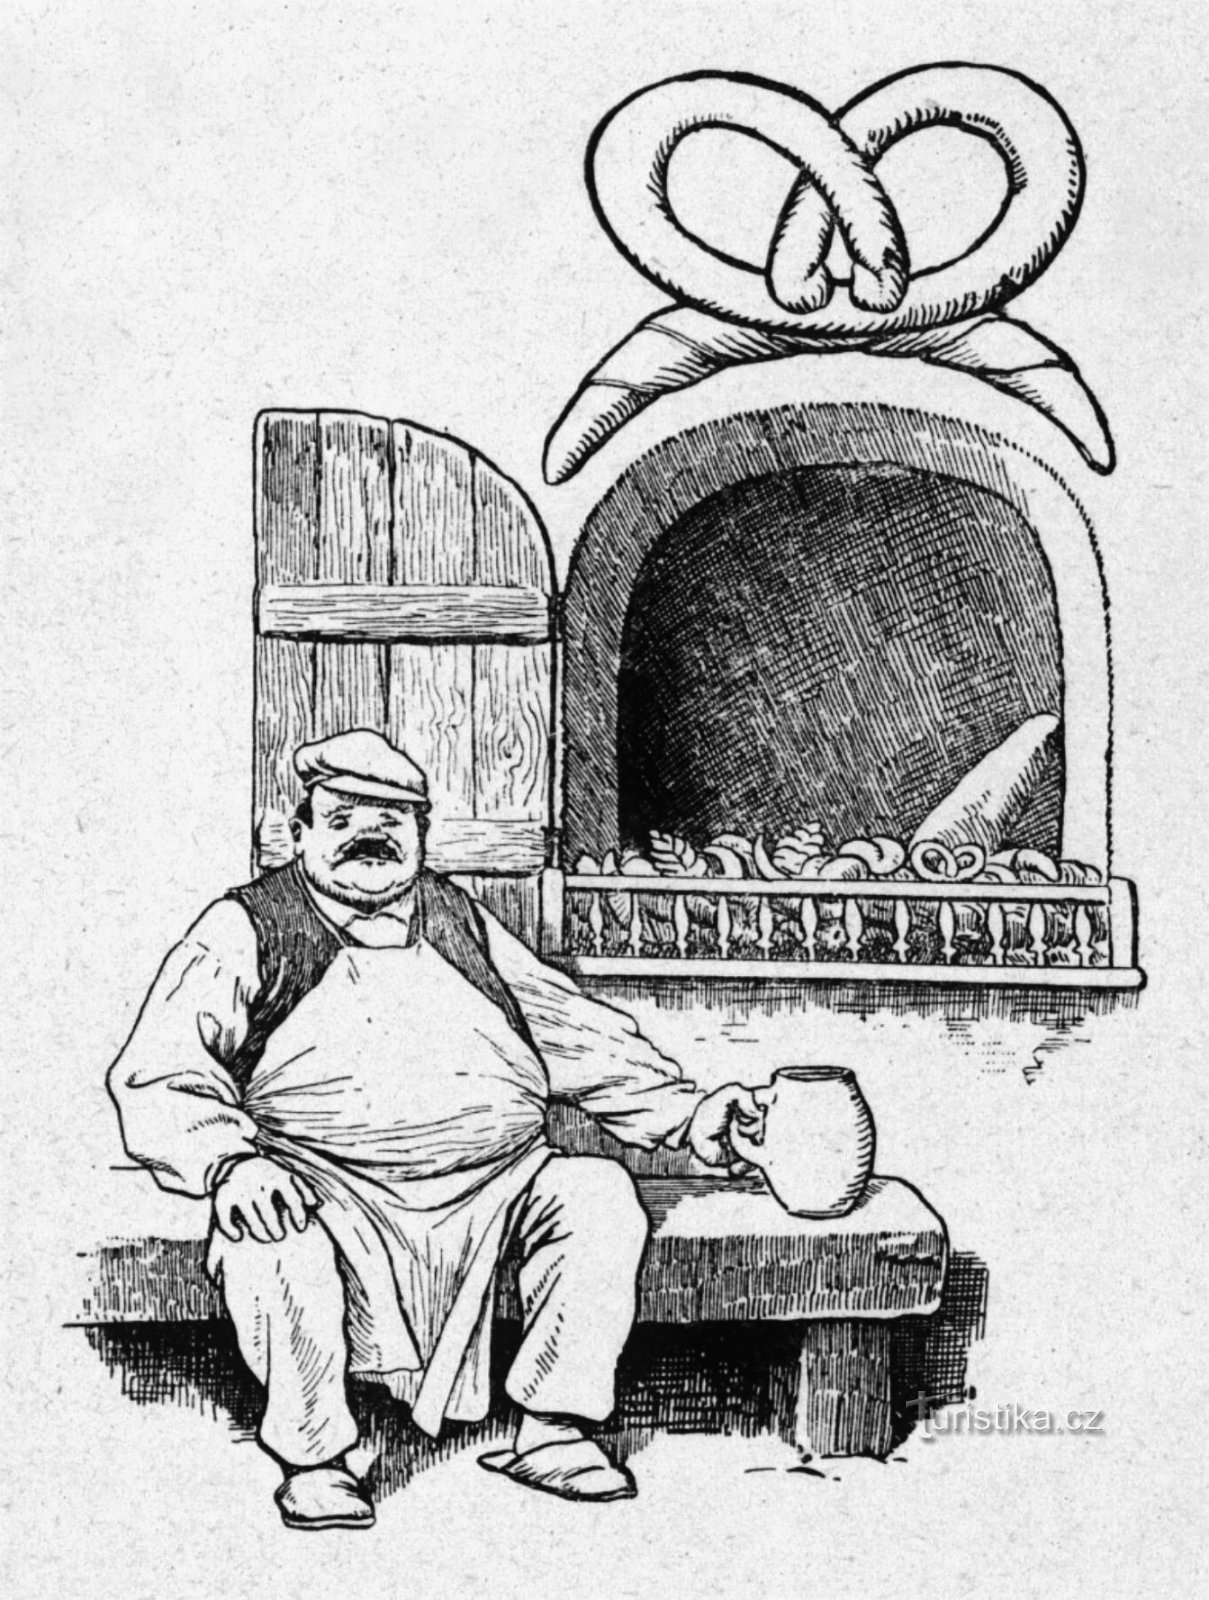 Um desenho de Věnceslav Černý do padeiro Úpí Konvalinka do livro